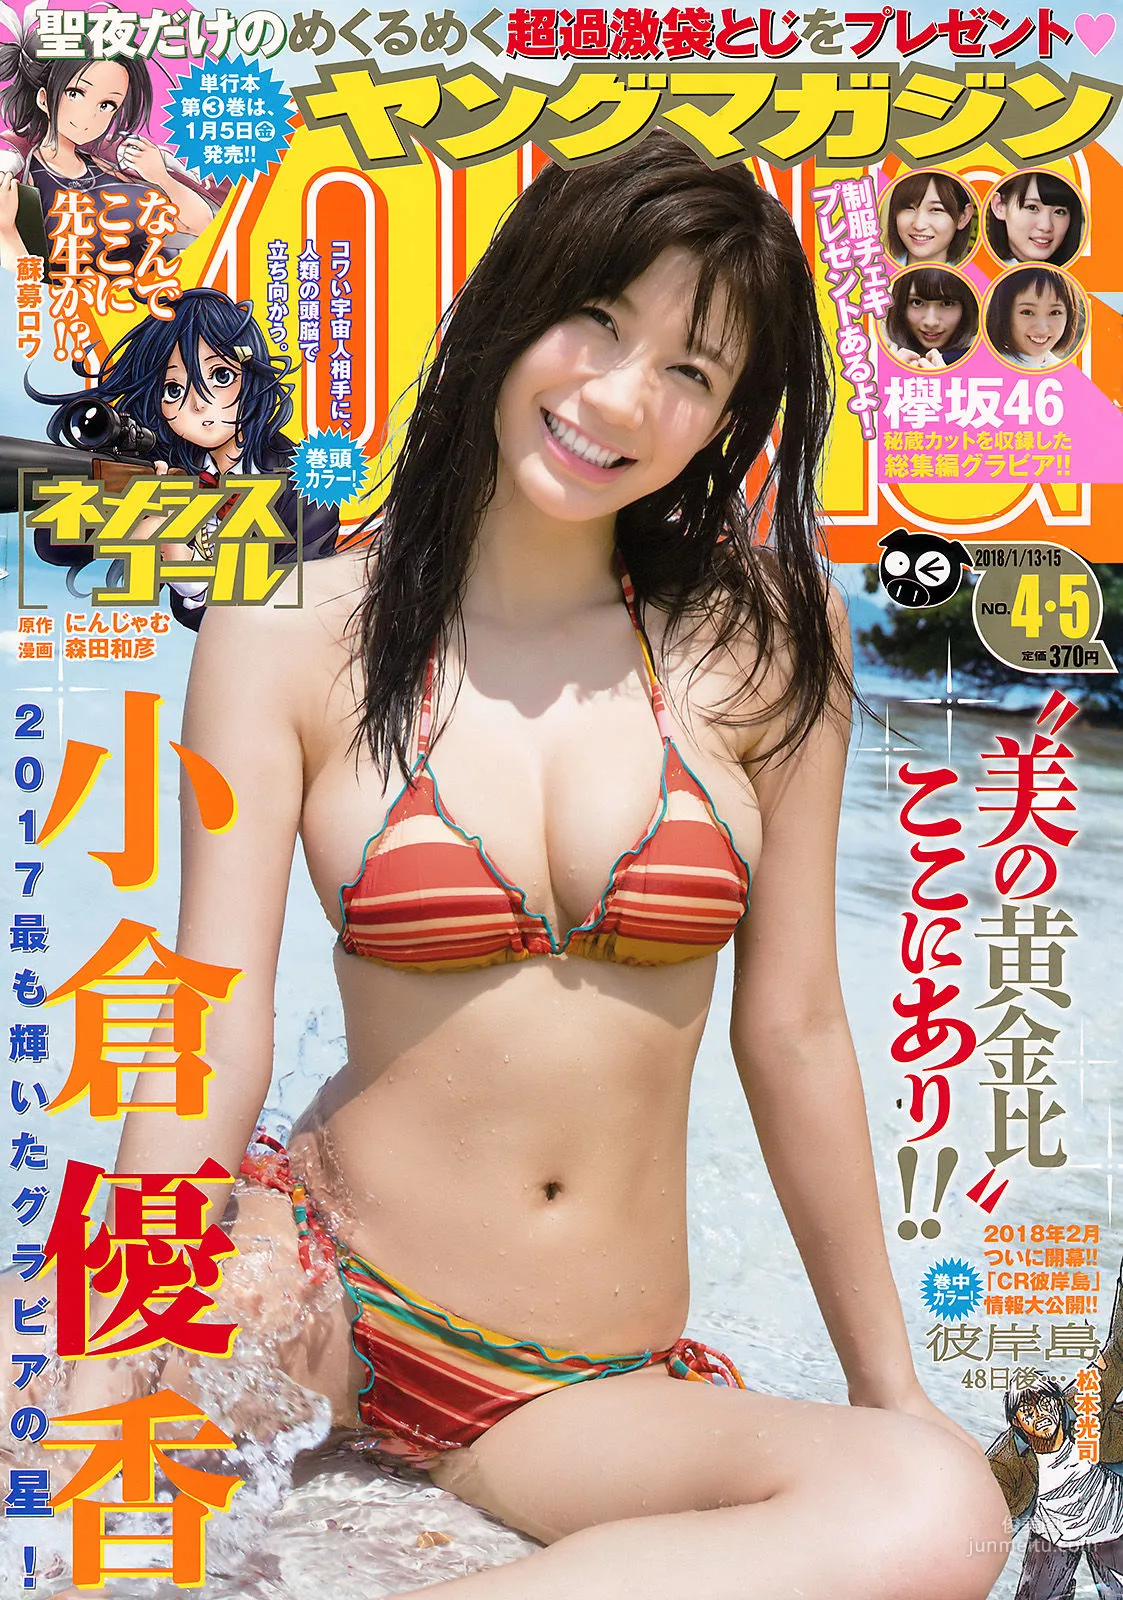 [Young Magazine] 小倉優香 欅坂46 2018年No.04-05 写真杂志1